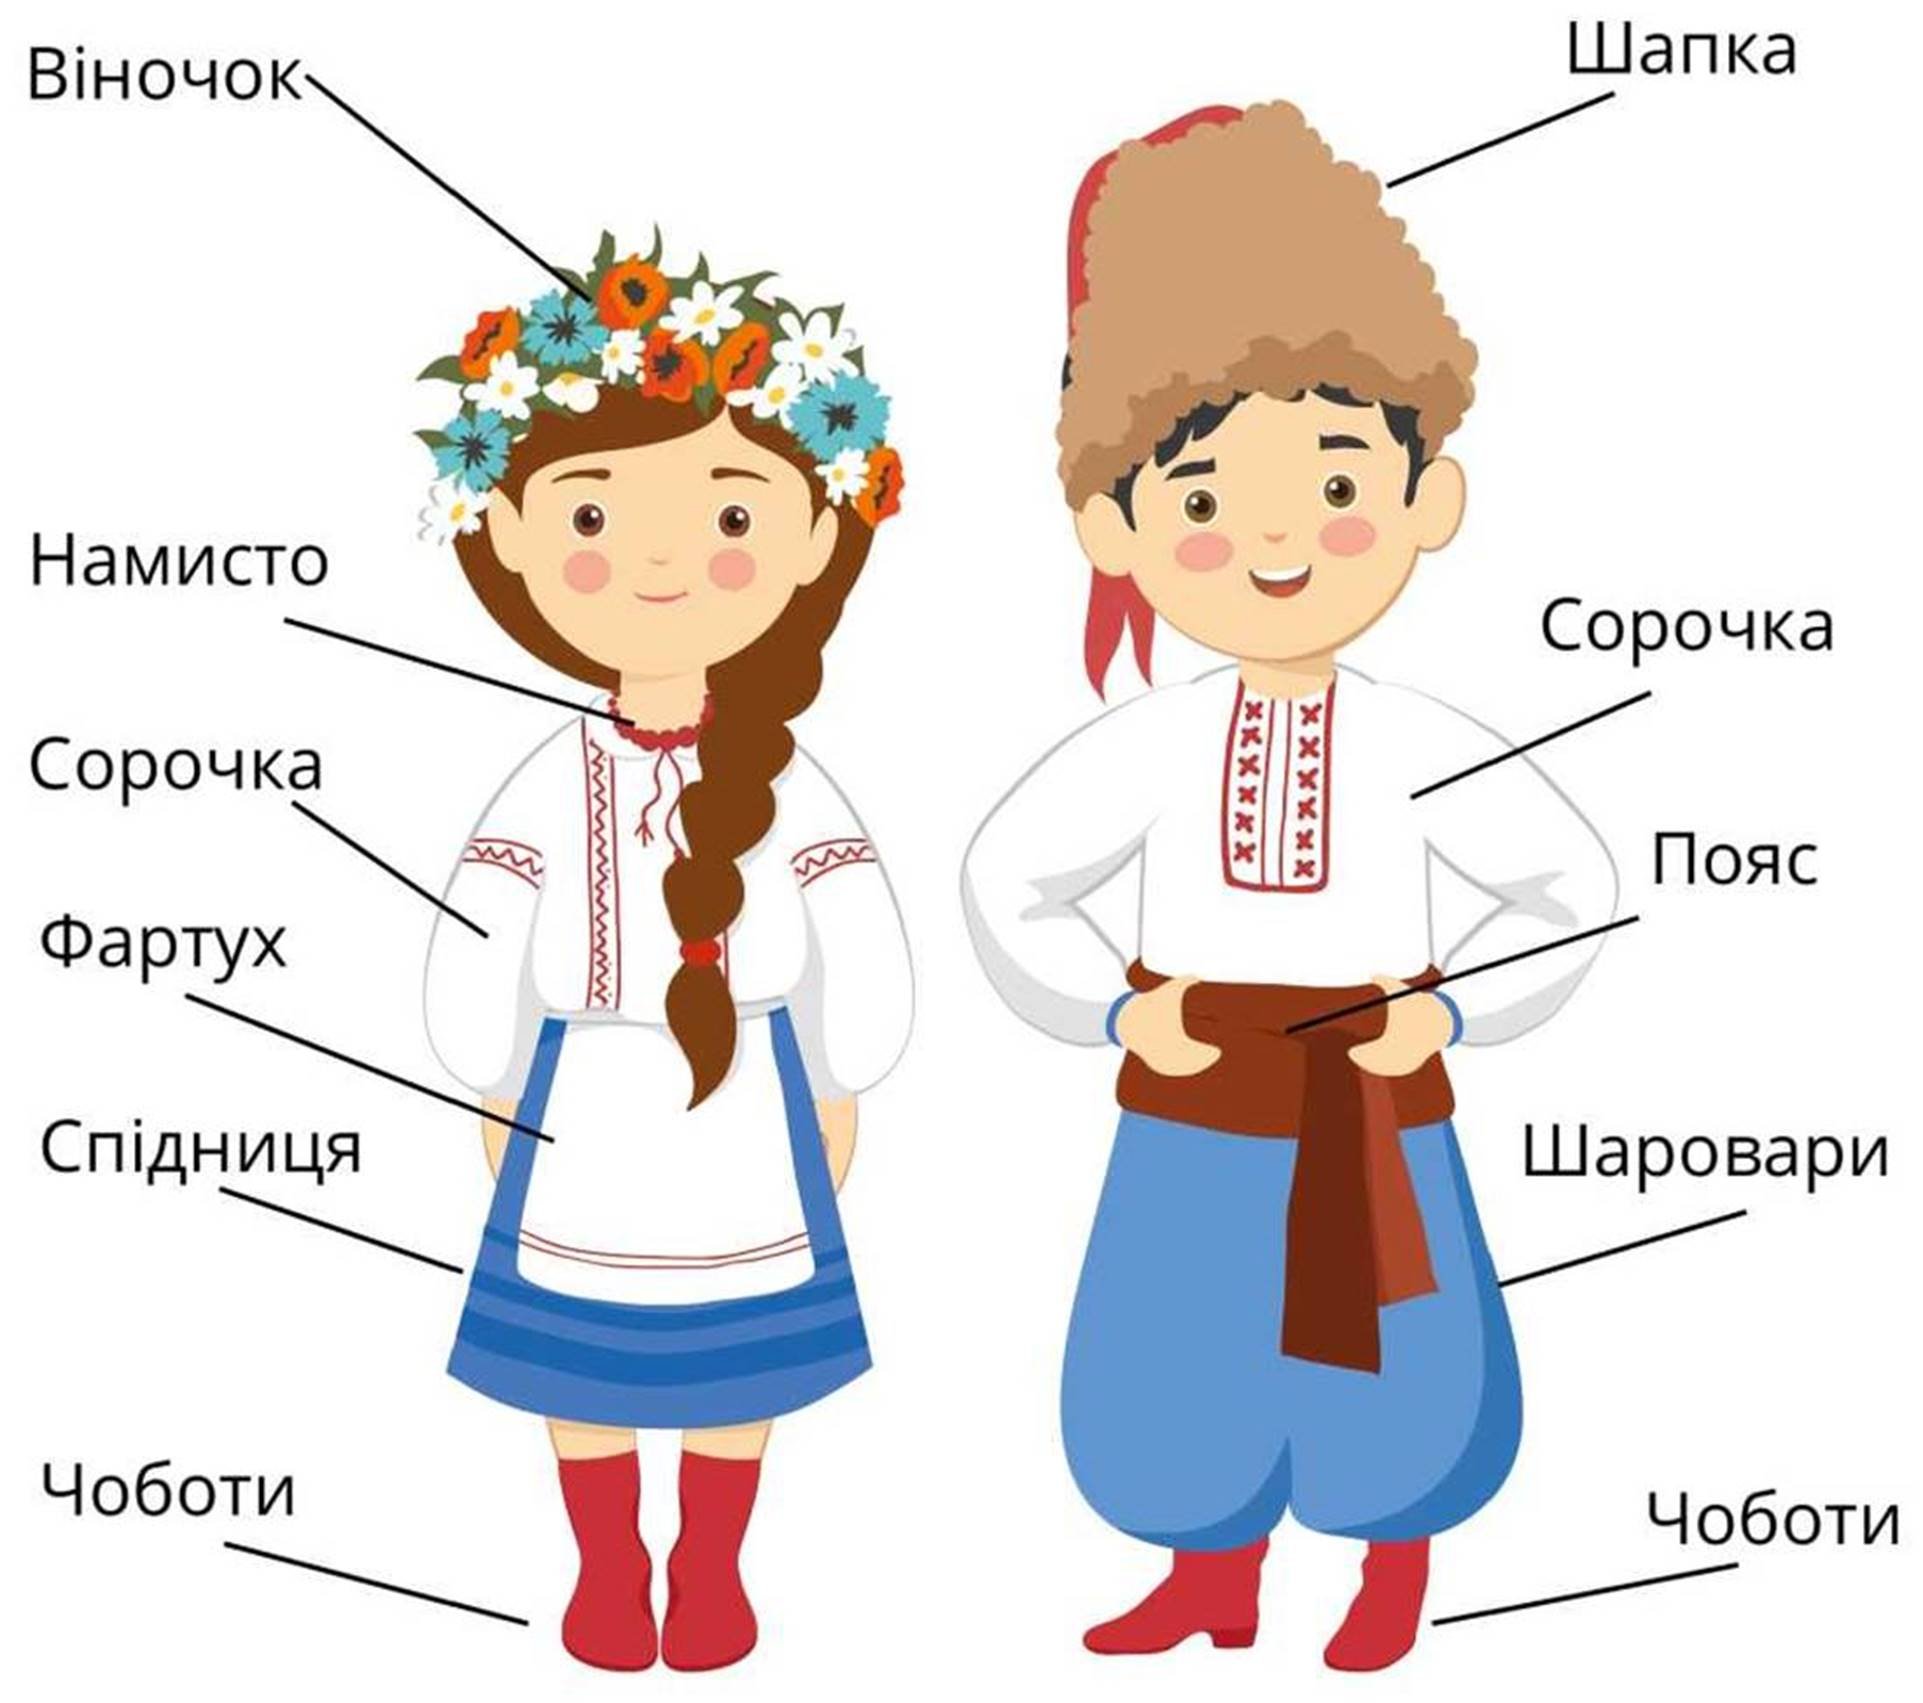 Украинцы название. Украинский национальный костюм рису. Украинцы дети в национальных костюмах. Украинский костюм рисунок для детей. Народный костюм украинцев.